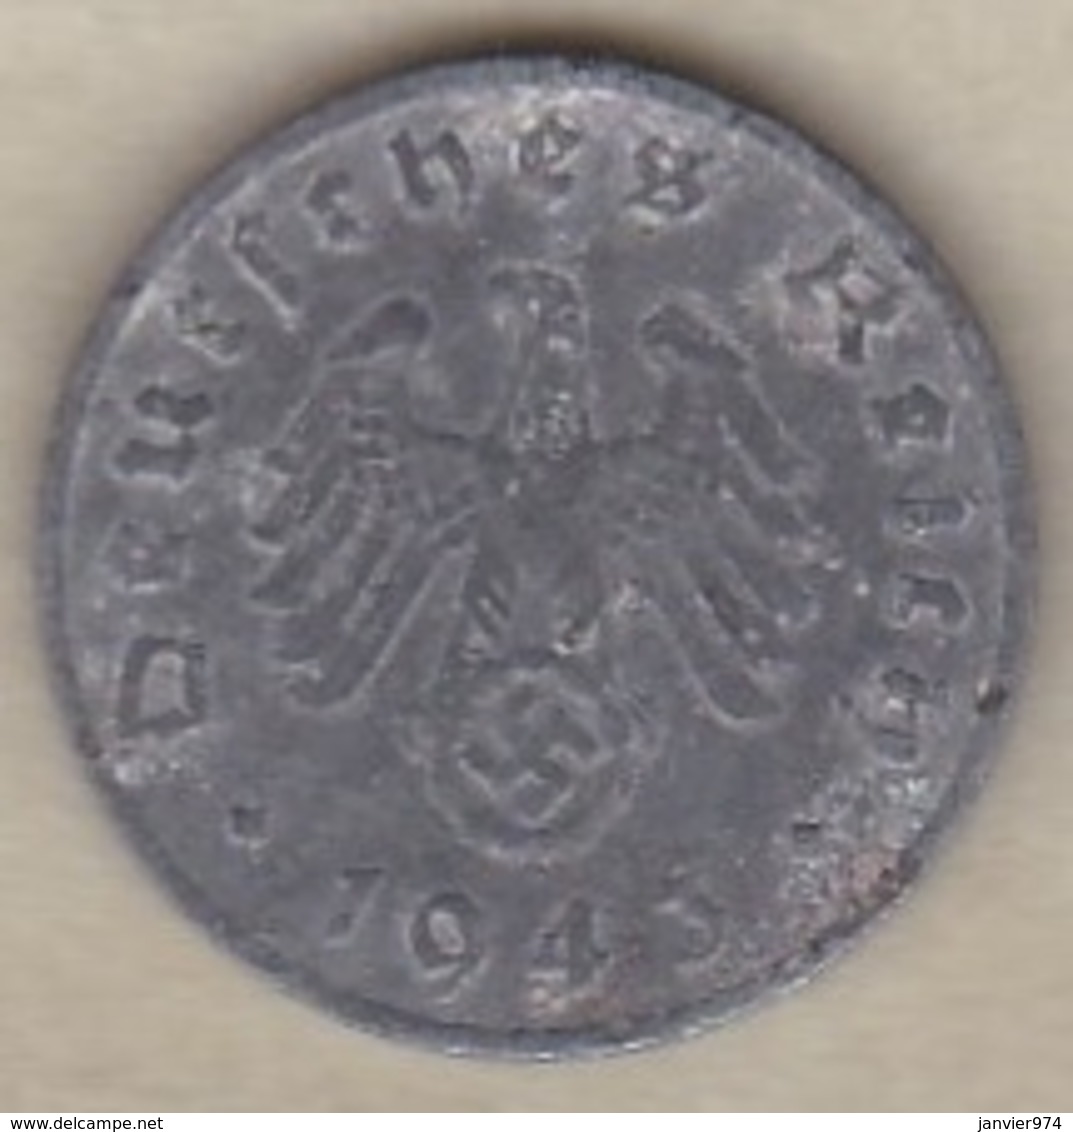 1 Reichspfennig 1943 F (STUTGART)  En Zinc - 1 Reichspfennig